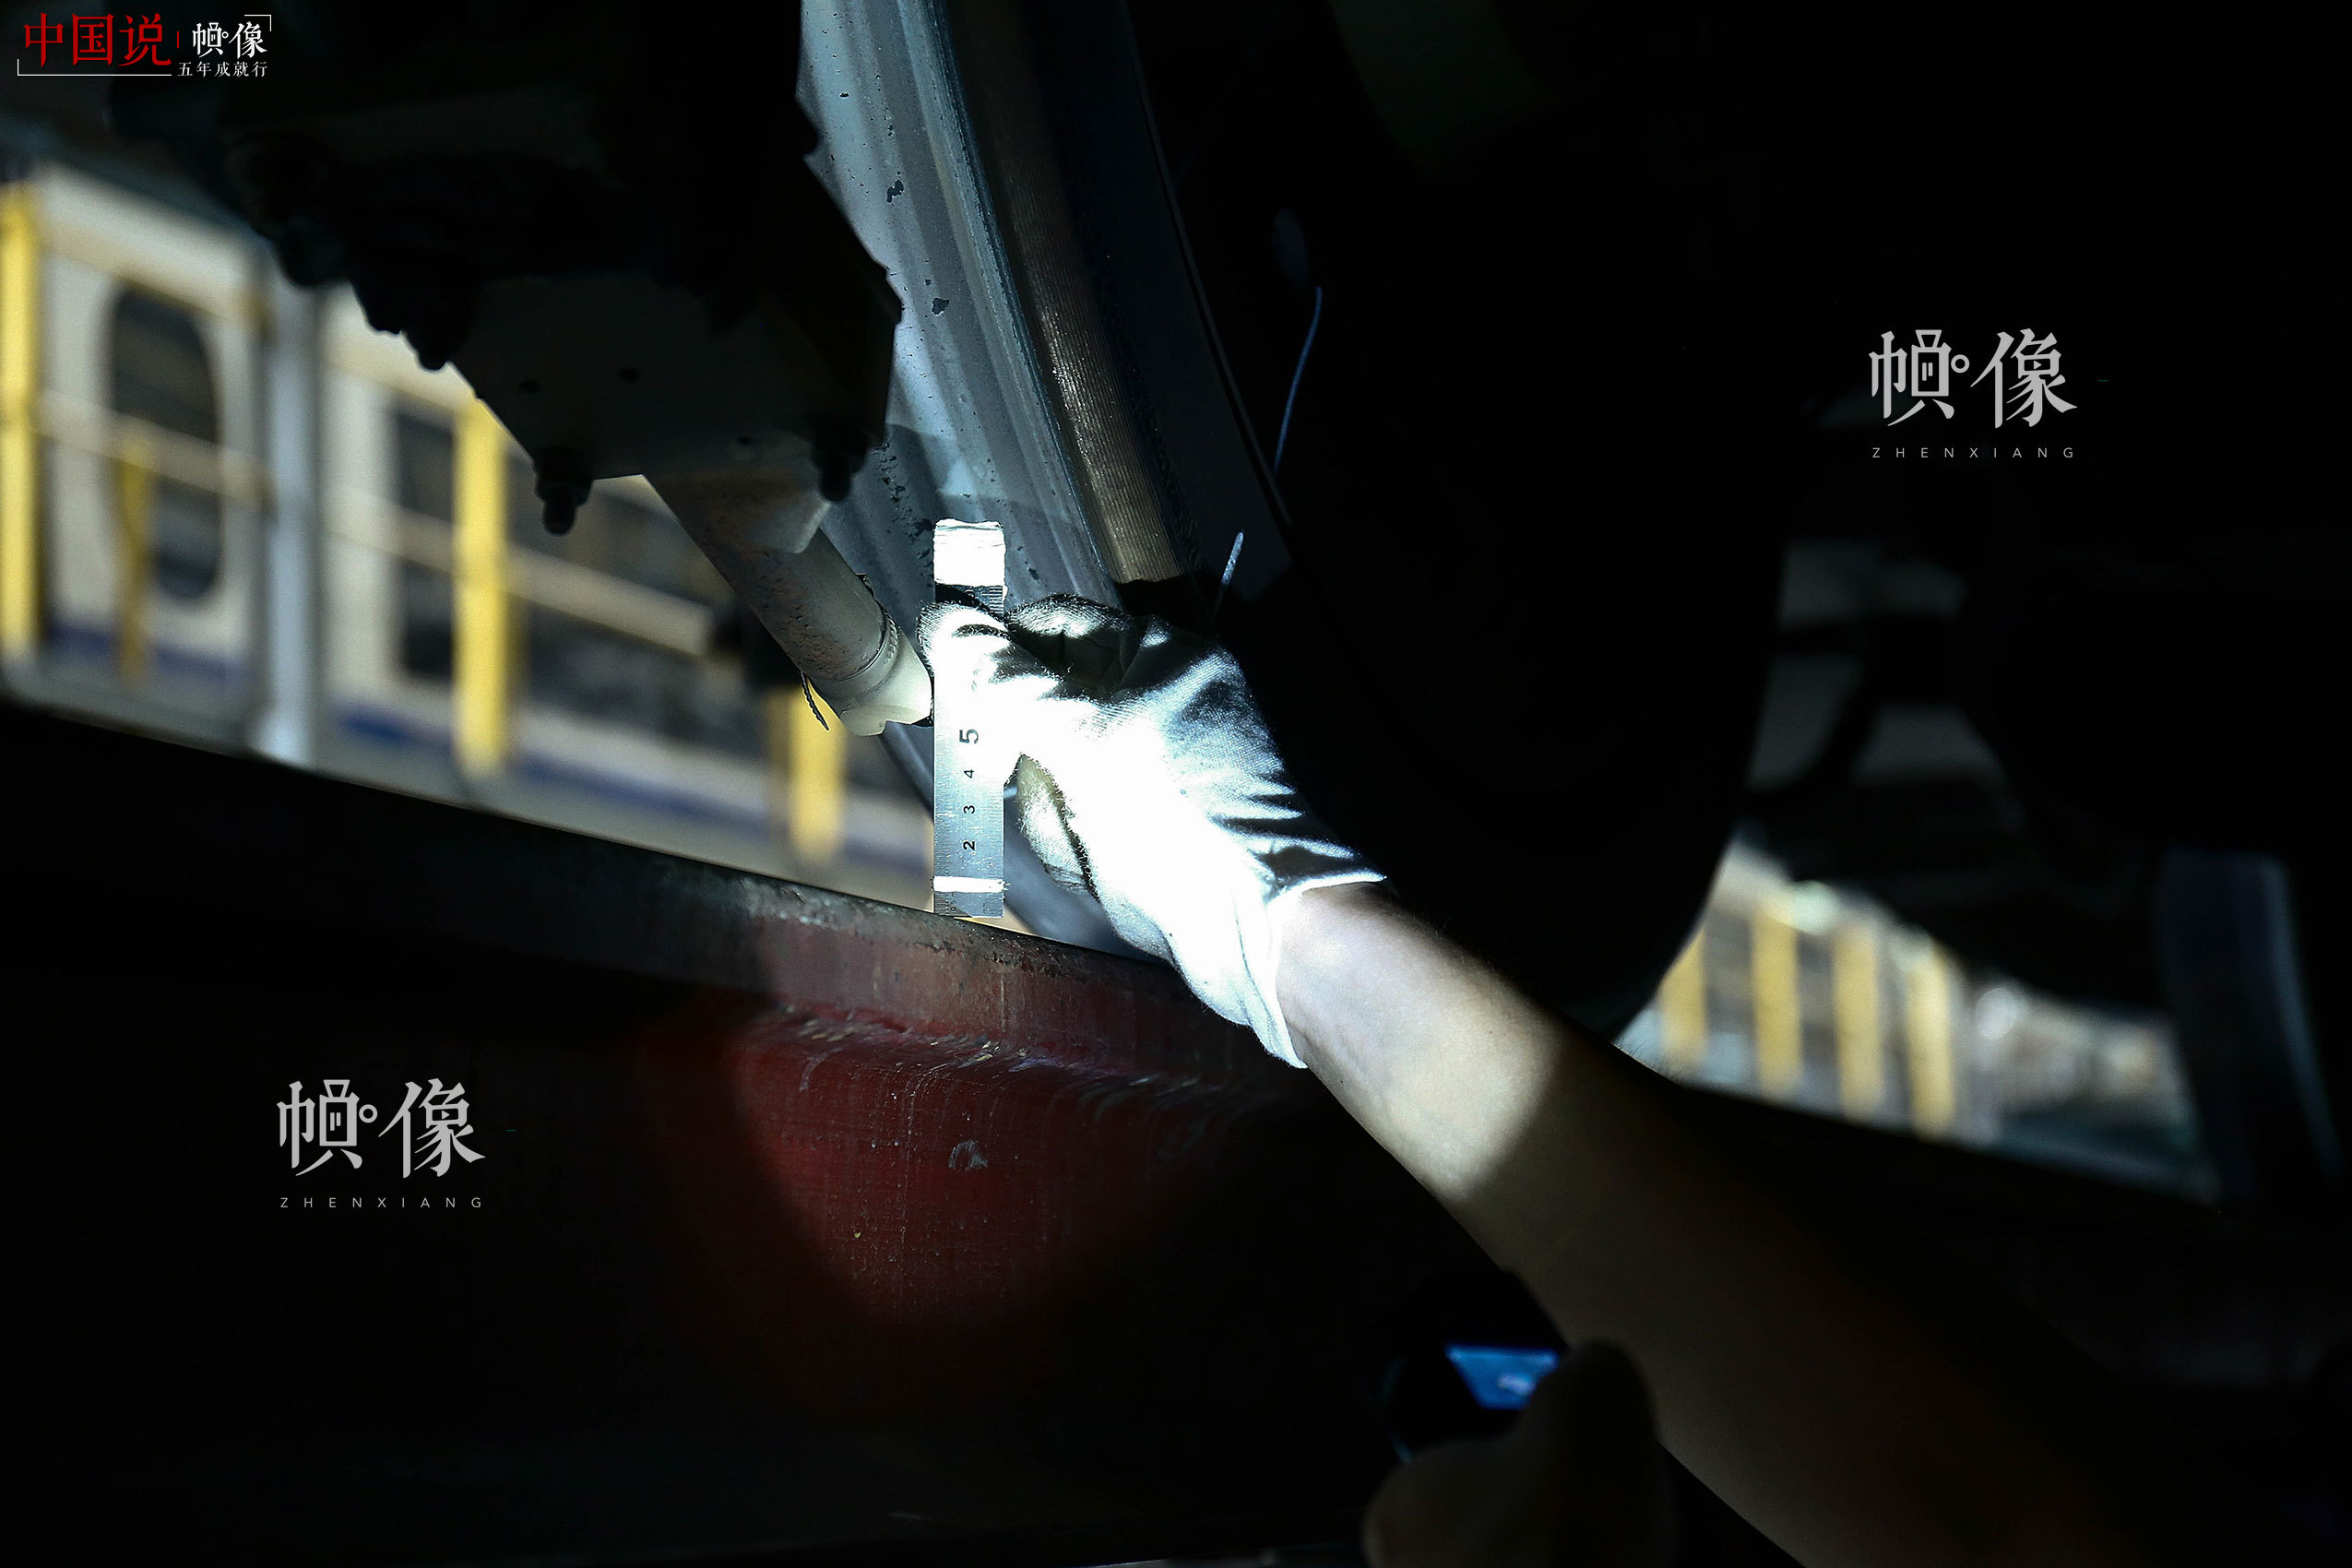 车辆行驶中需要利用撒砂系统增加轨面摩擦力，作业人员利用钢板尺测量撒砂管与轨道之间的高度。中国网记者 黄富友 摄